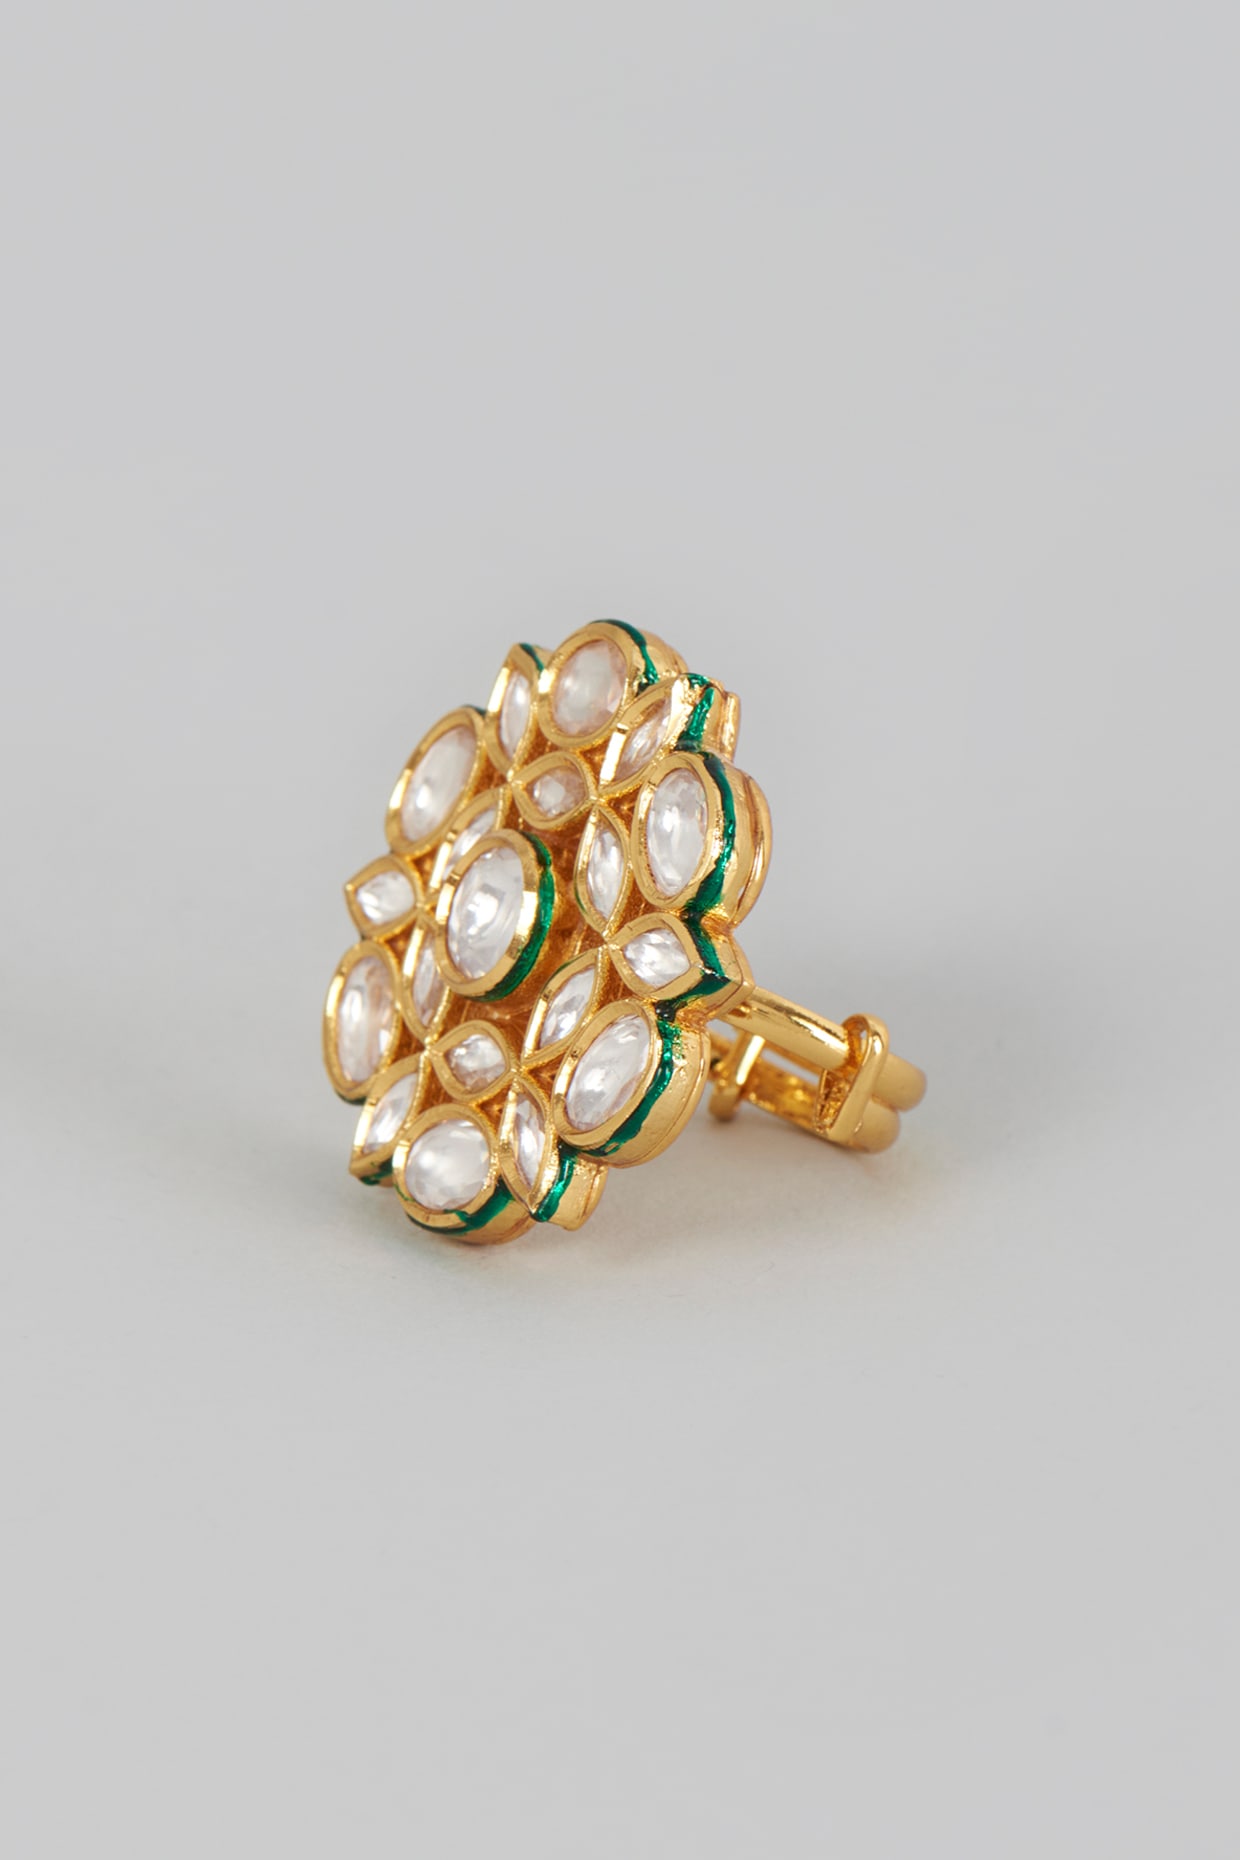 Buy Antique Gold Finger Rings For Ladies Online – Gehna Shop